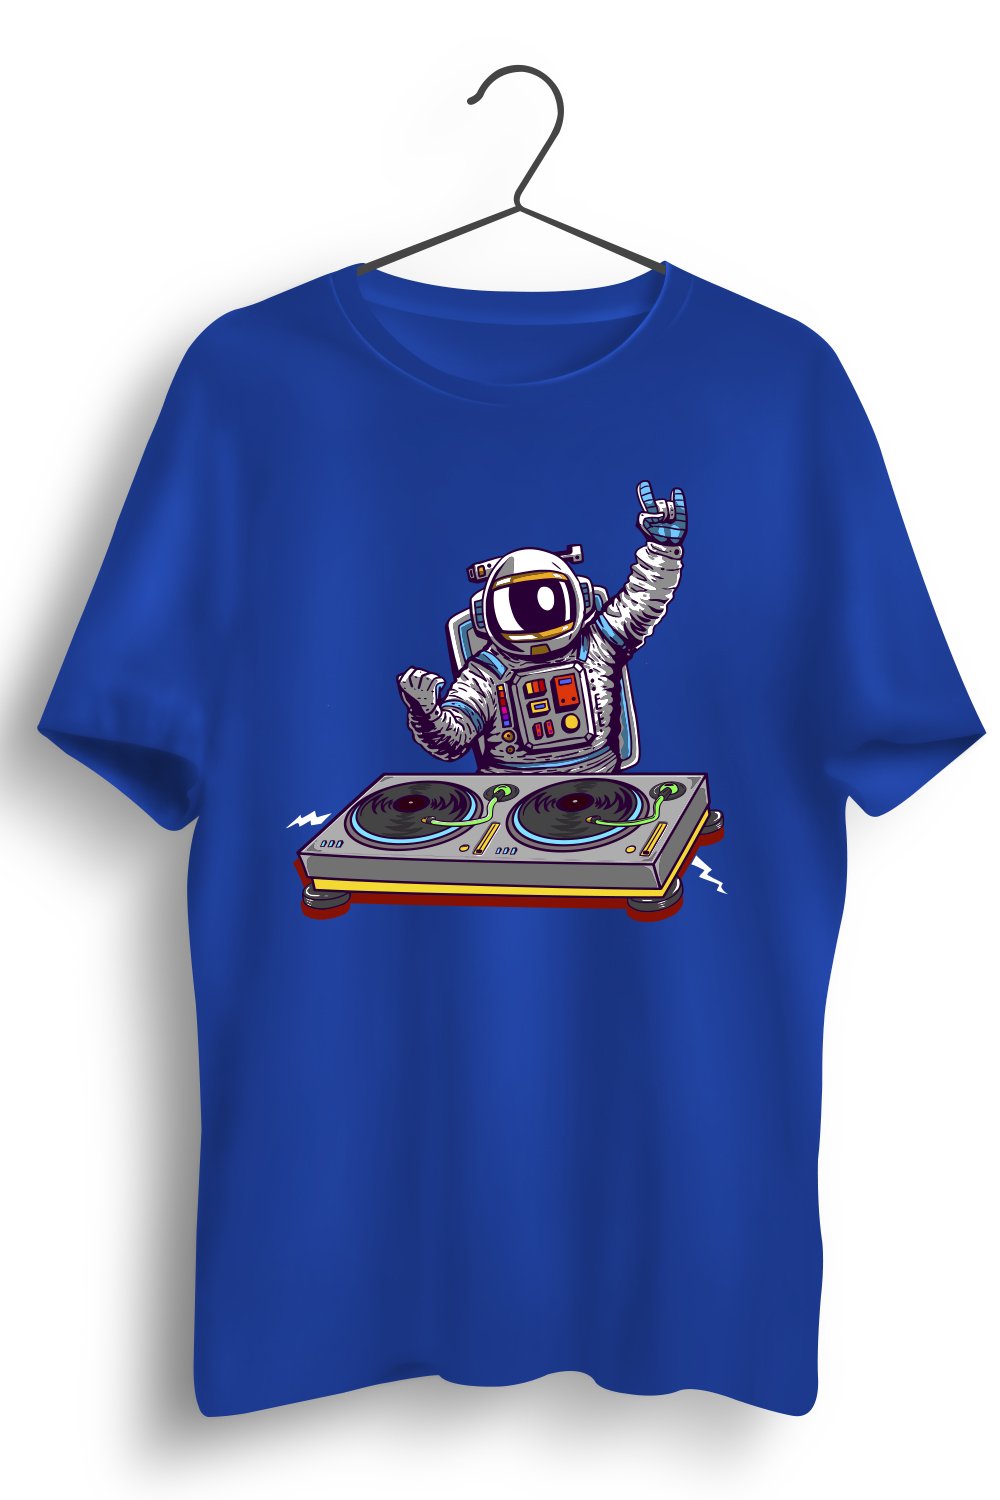 Space Jam Graphic Printed Blue Tshirt